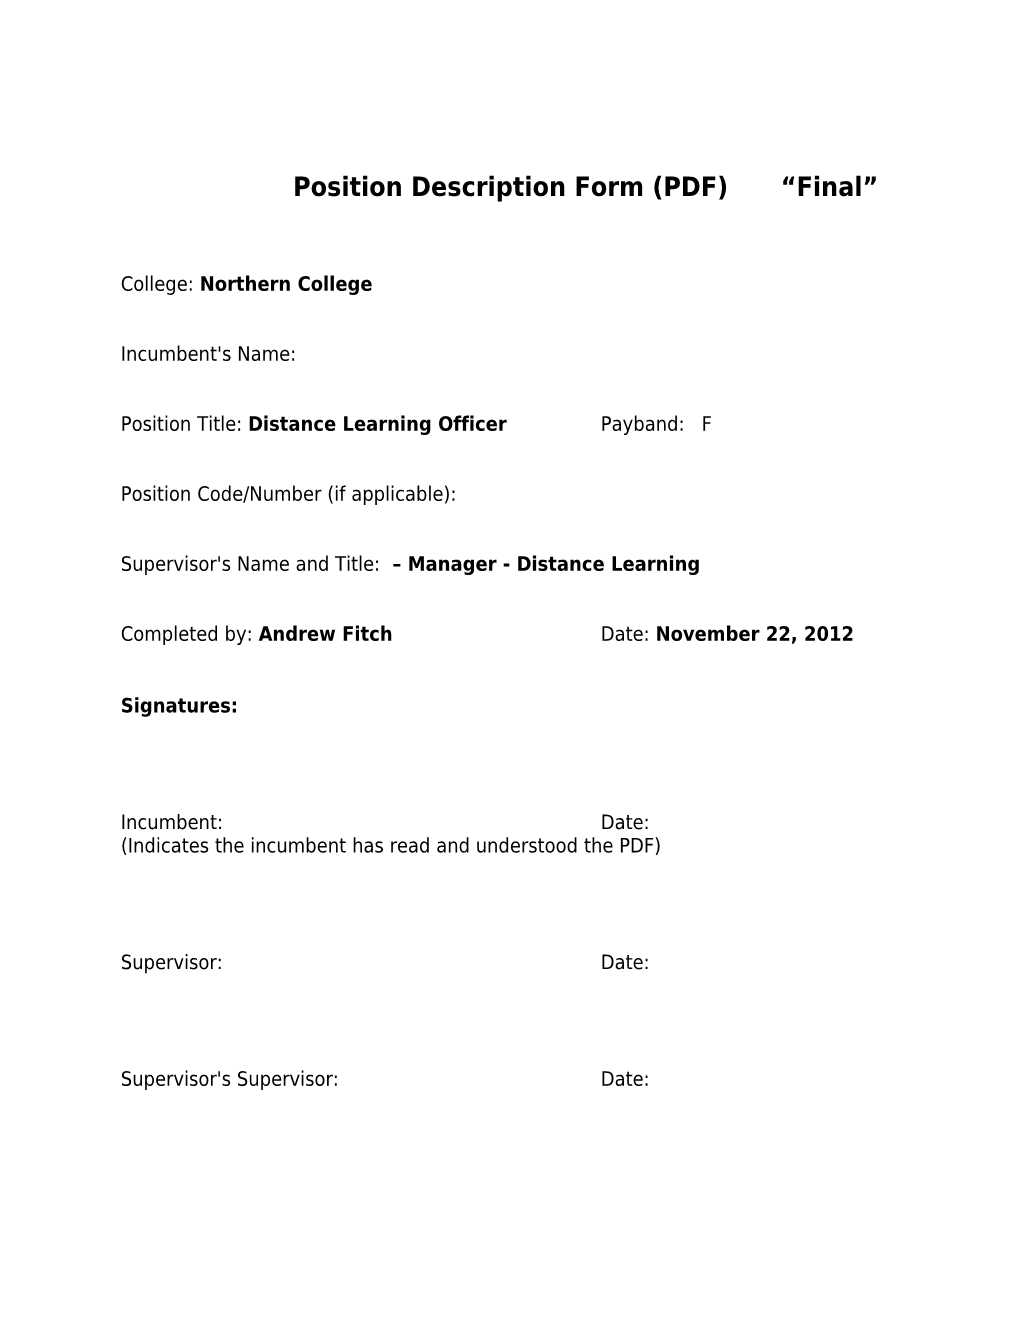 Position Description Form (PDF) Final